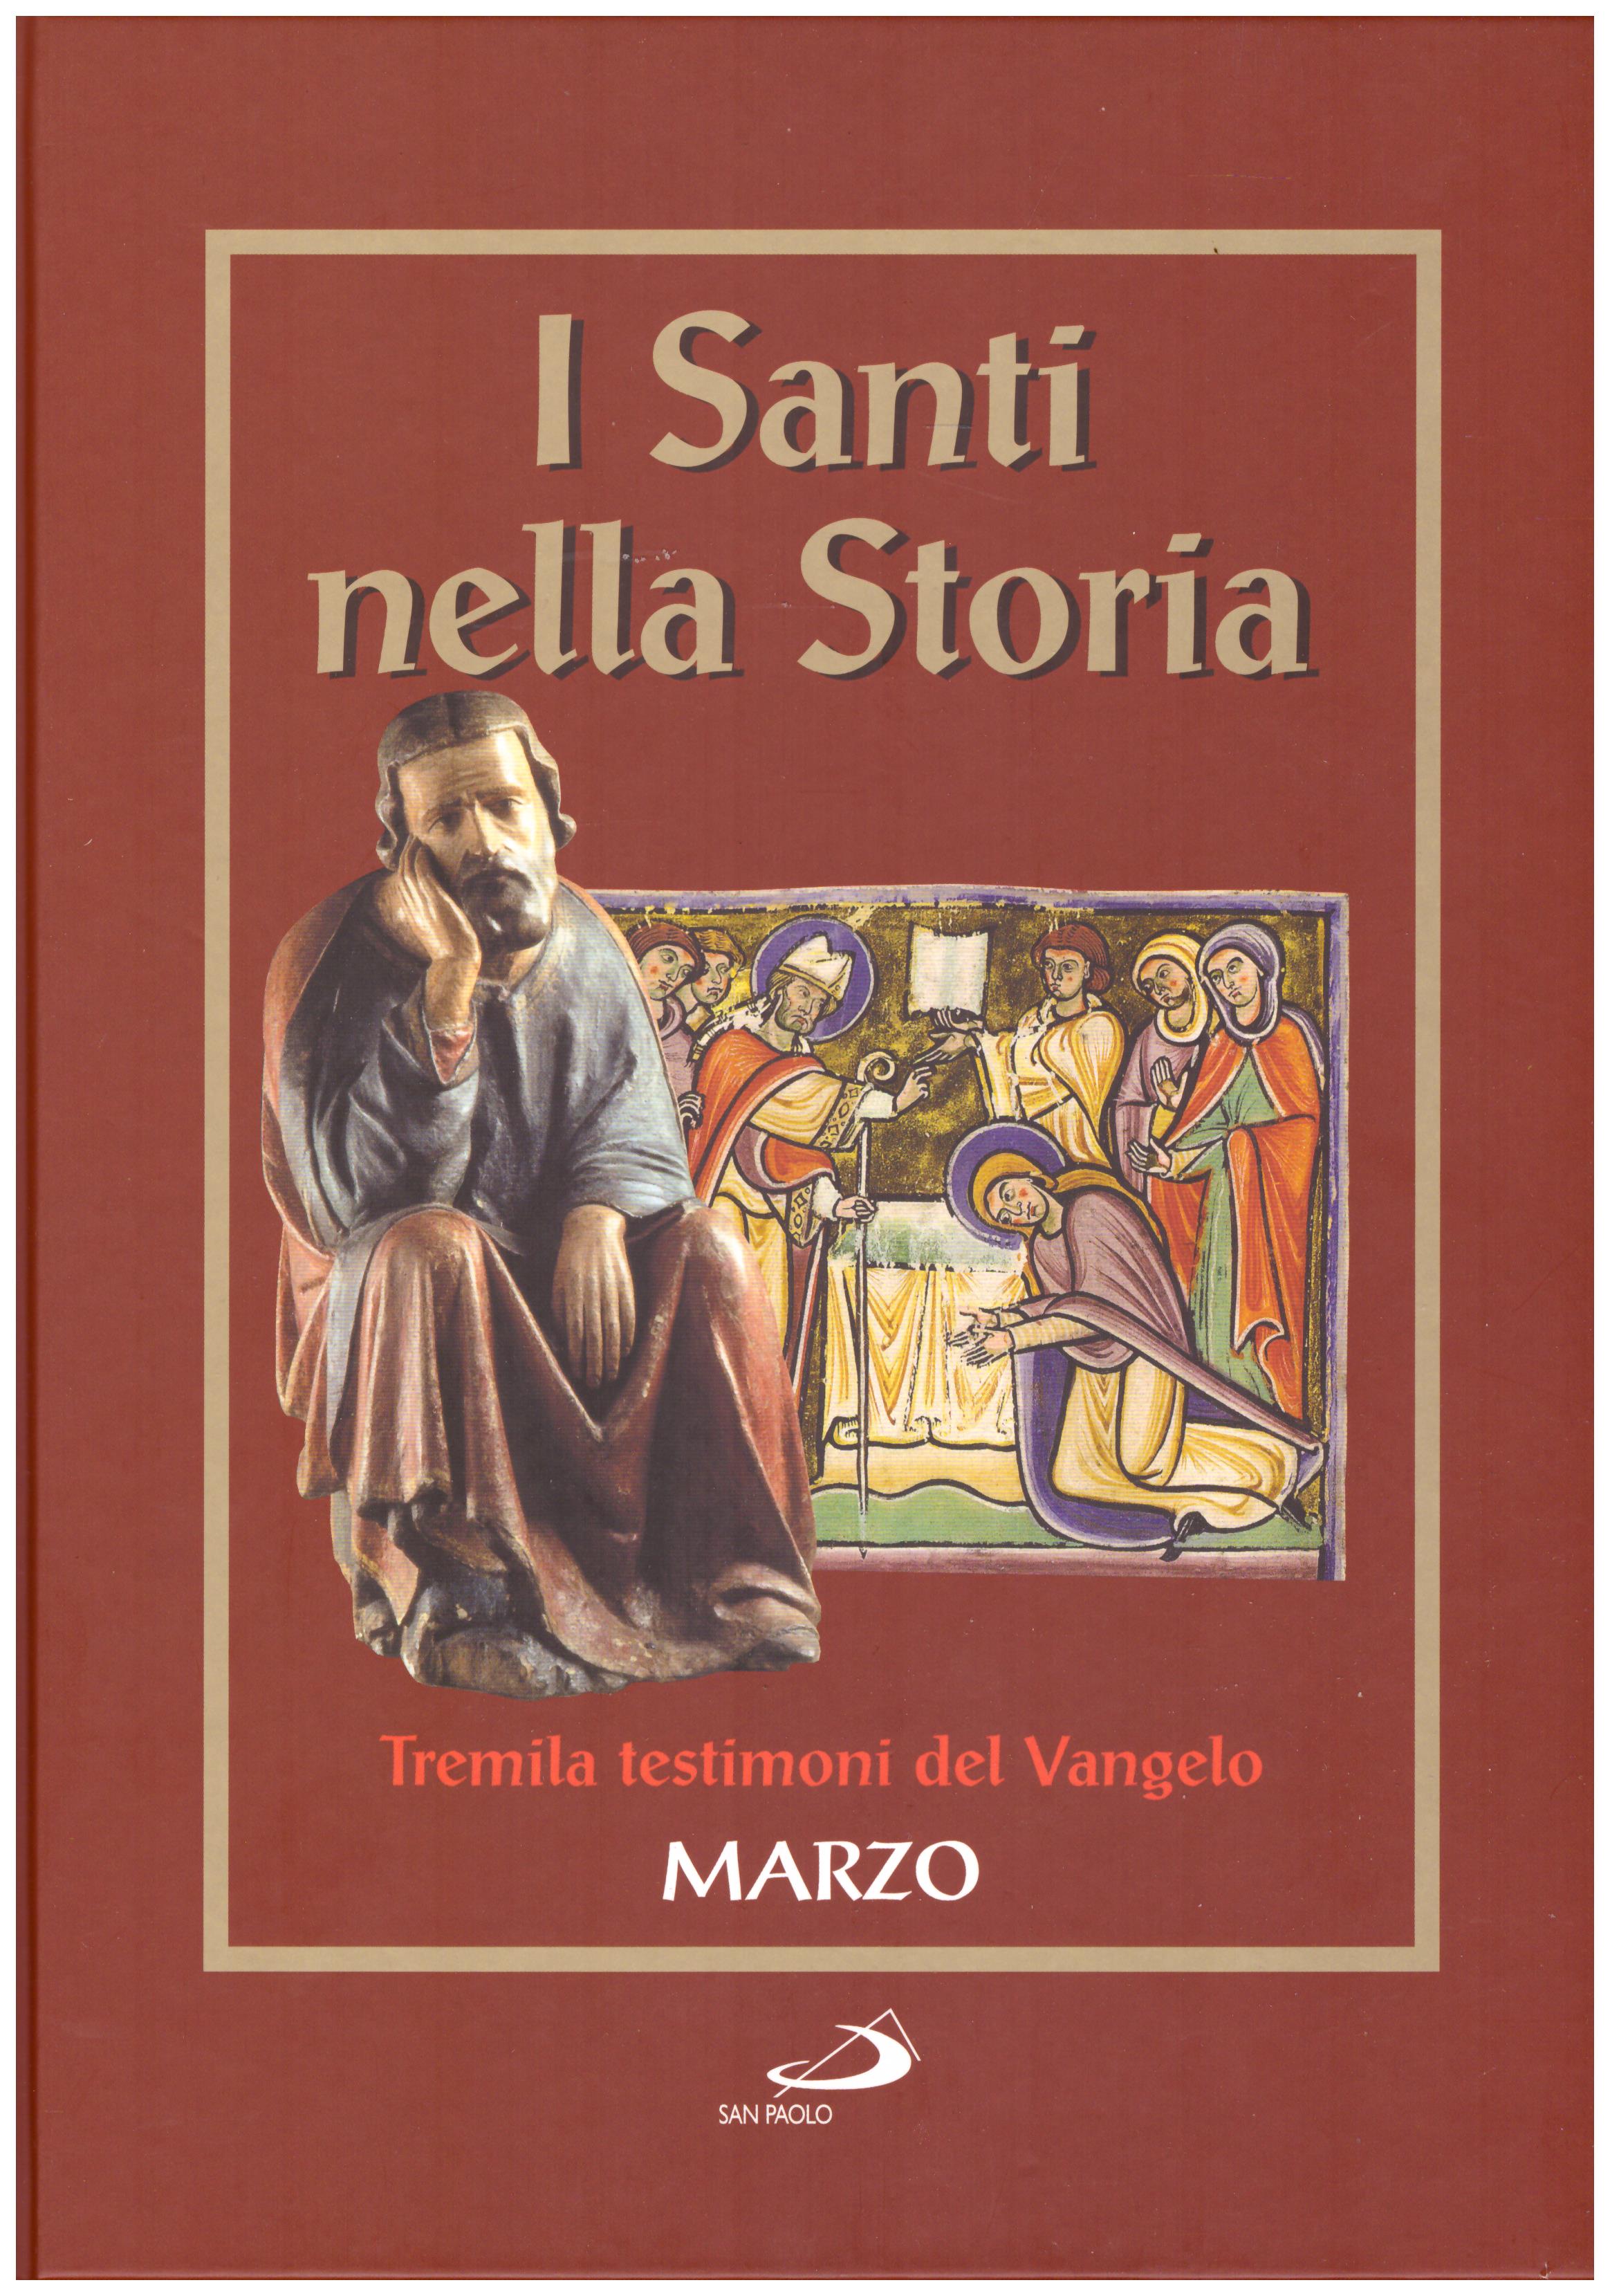 Titolo: I santi nella storia, tremila testimoni del Vangelo, Marzo Autore : AA.VV.   Editore: San Paolo 2006